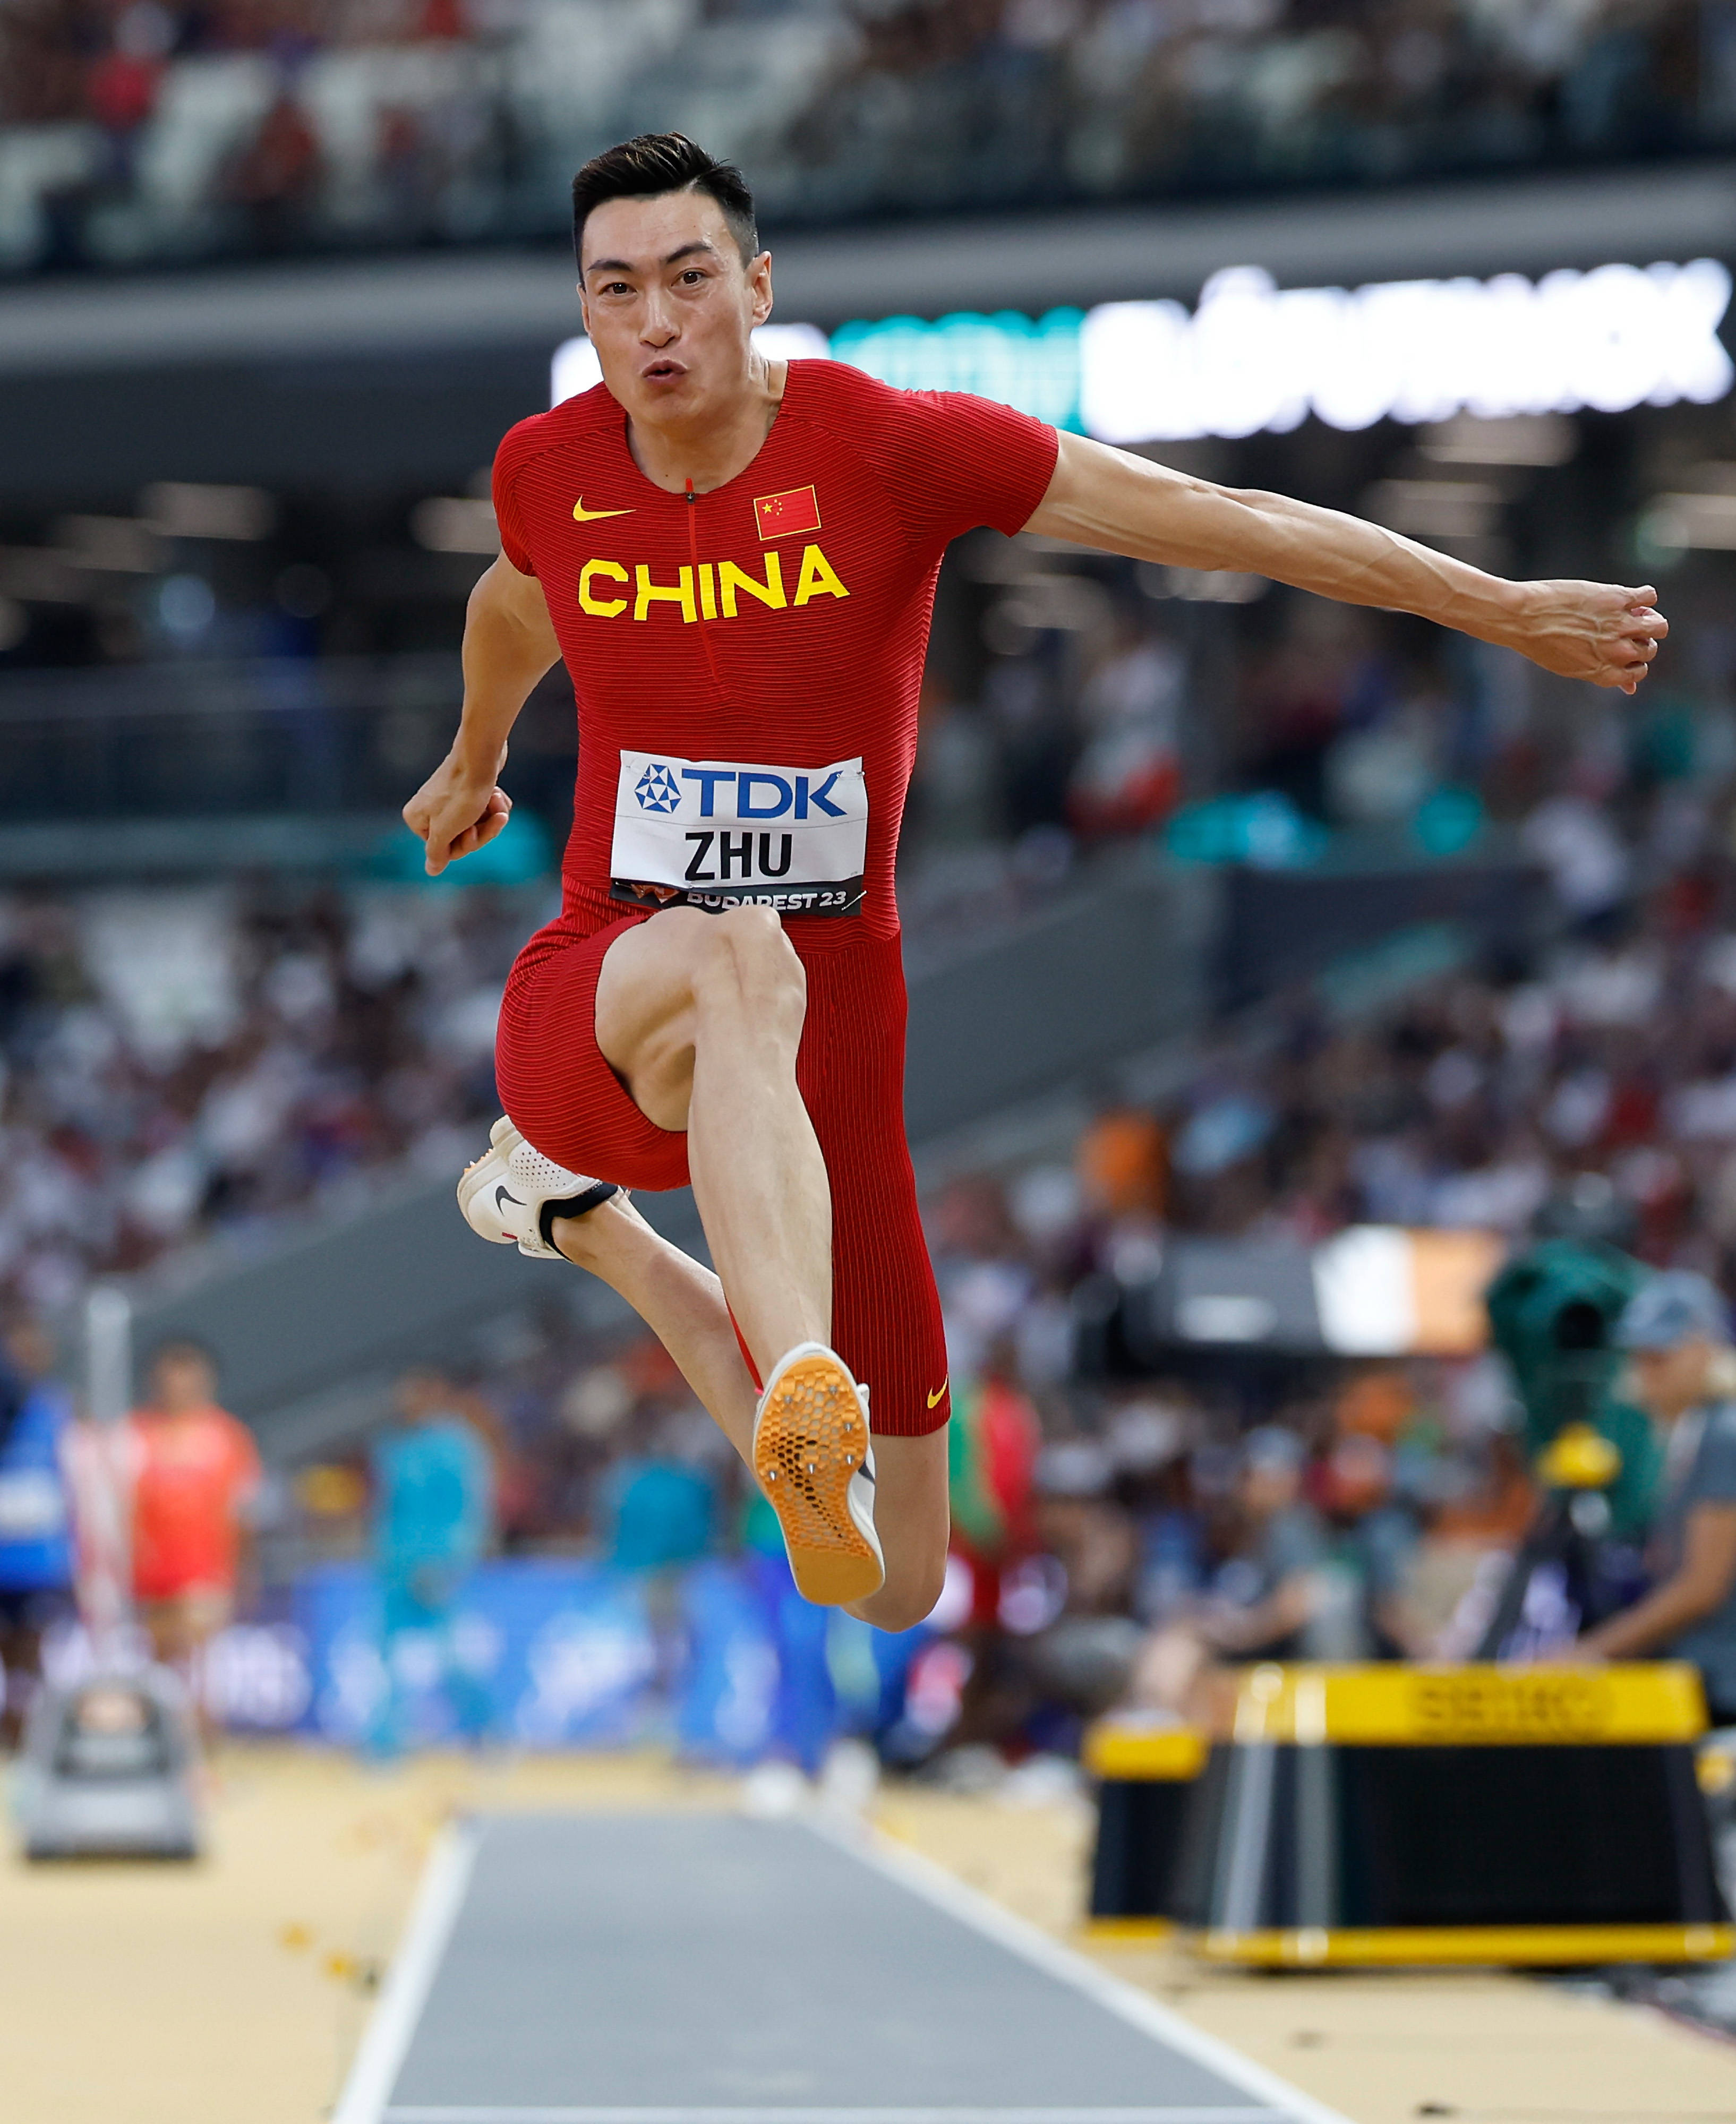 优享资讯 | 王嘉男为中国首夺男子跳远世锦赛冠军